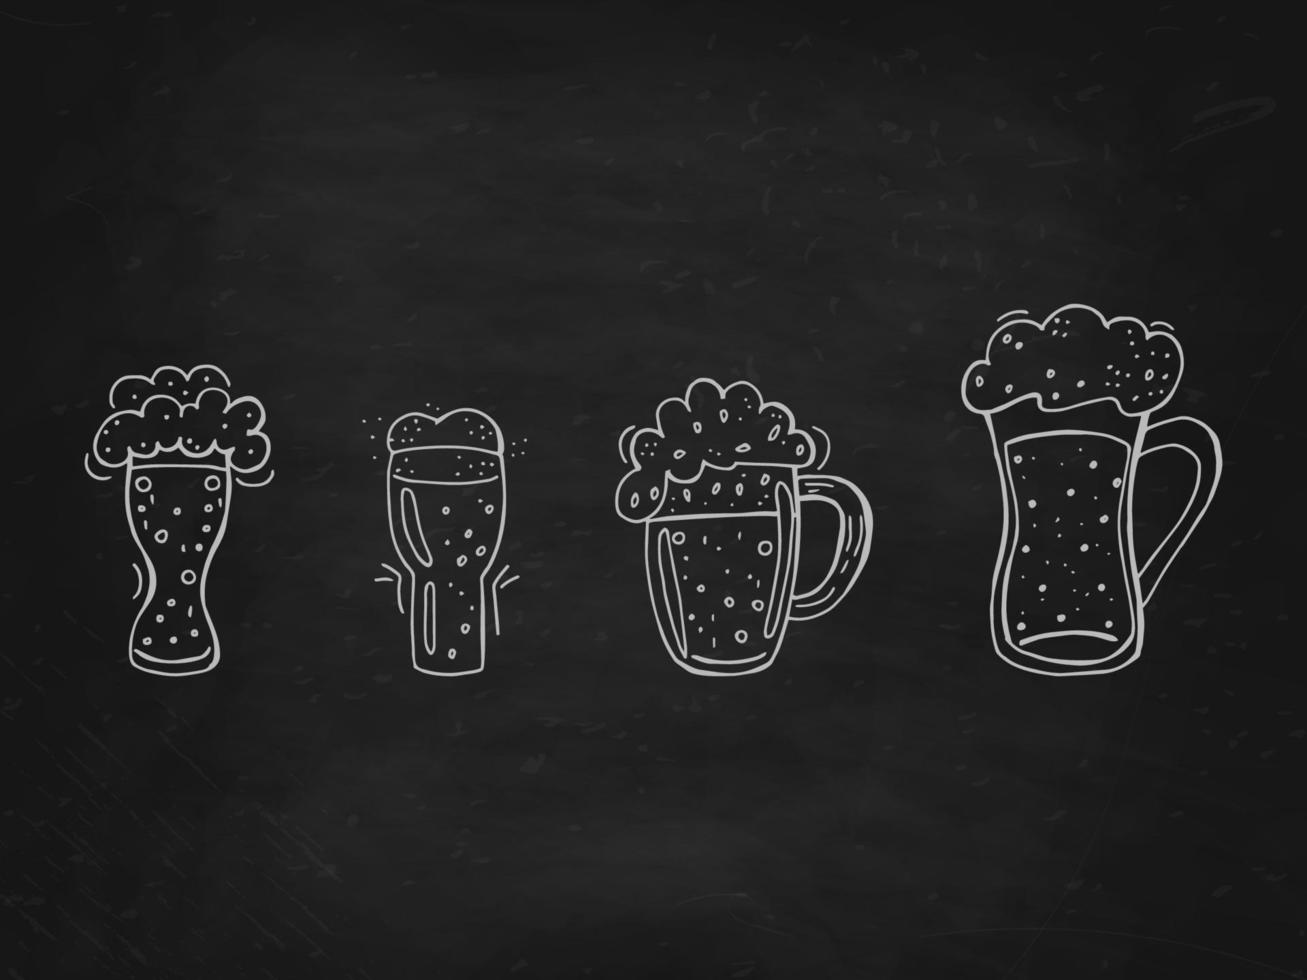 oktoberfest 2022 - festa della birra. insieme disegnato a mano di elementi doodle. festa tradizionale tedesca. boccali di birra in vetro su una lavagna nera. vettore